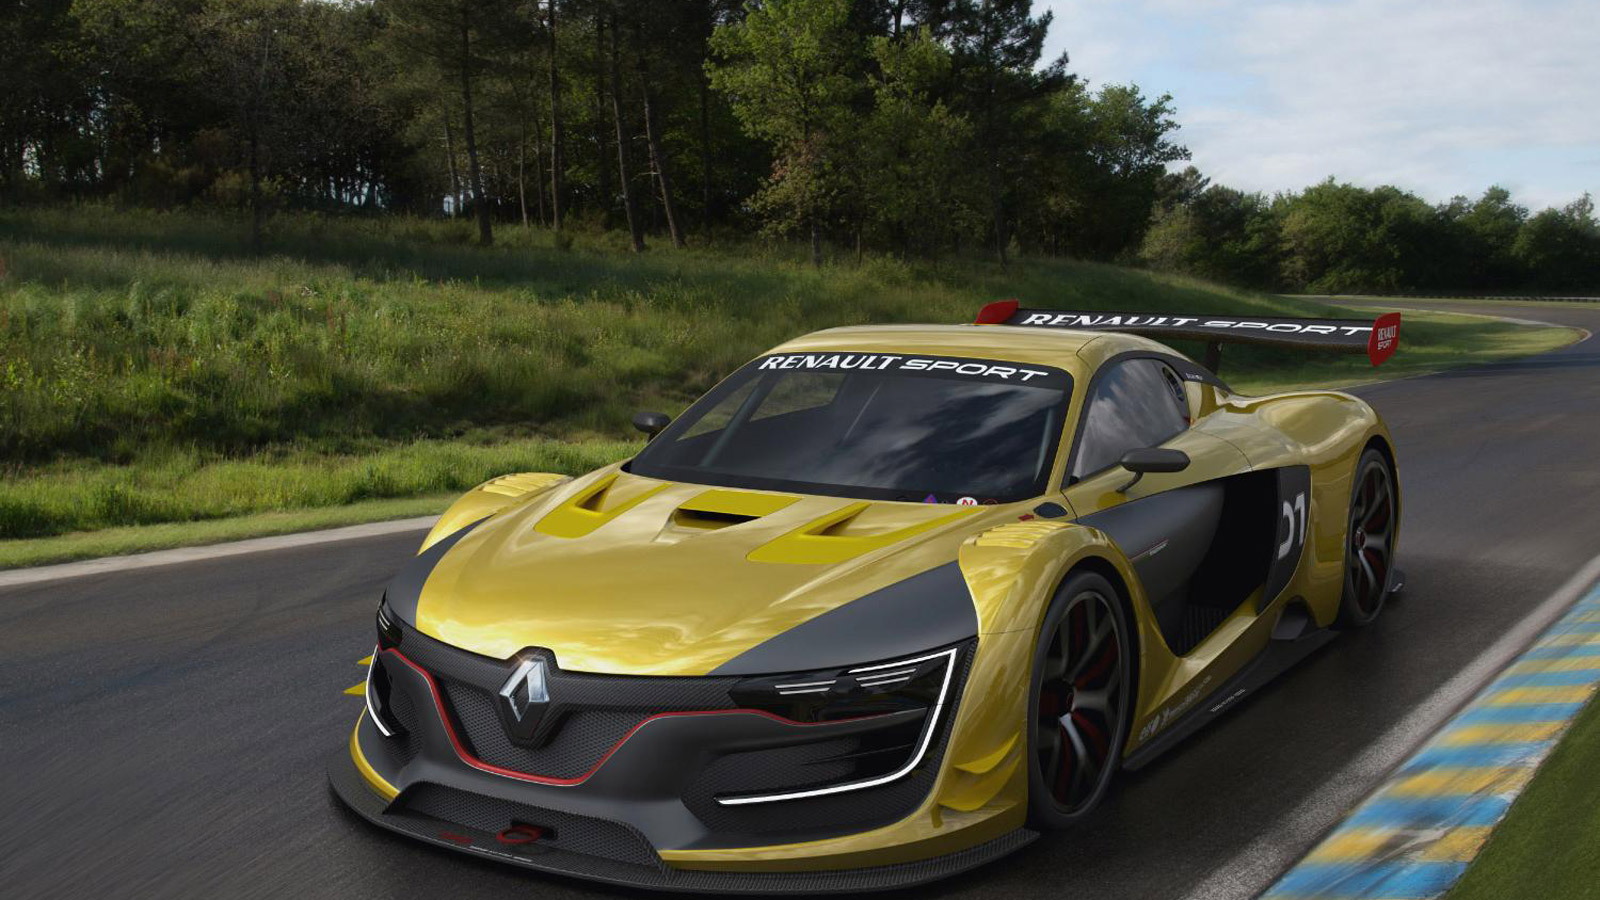 2015 Renault R.S. 01 race car